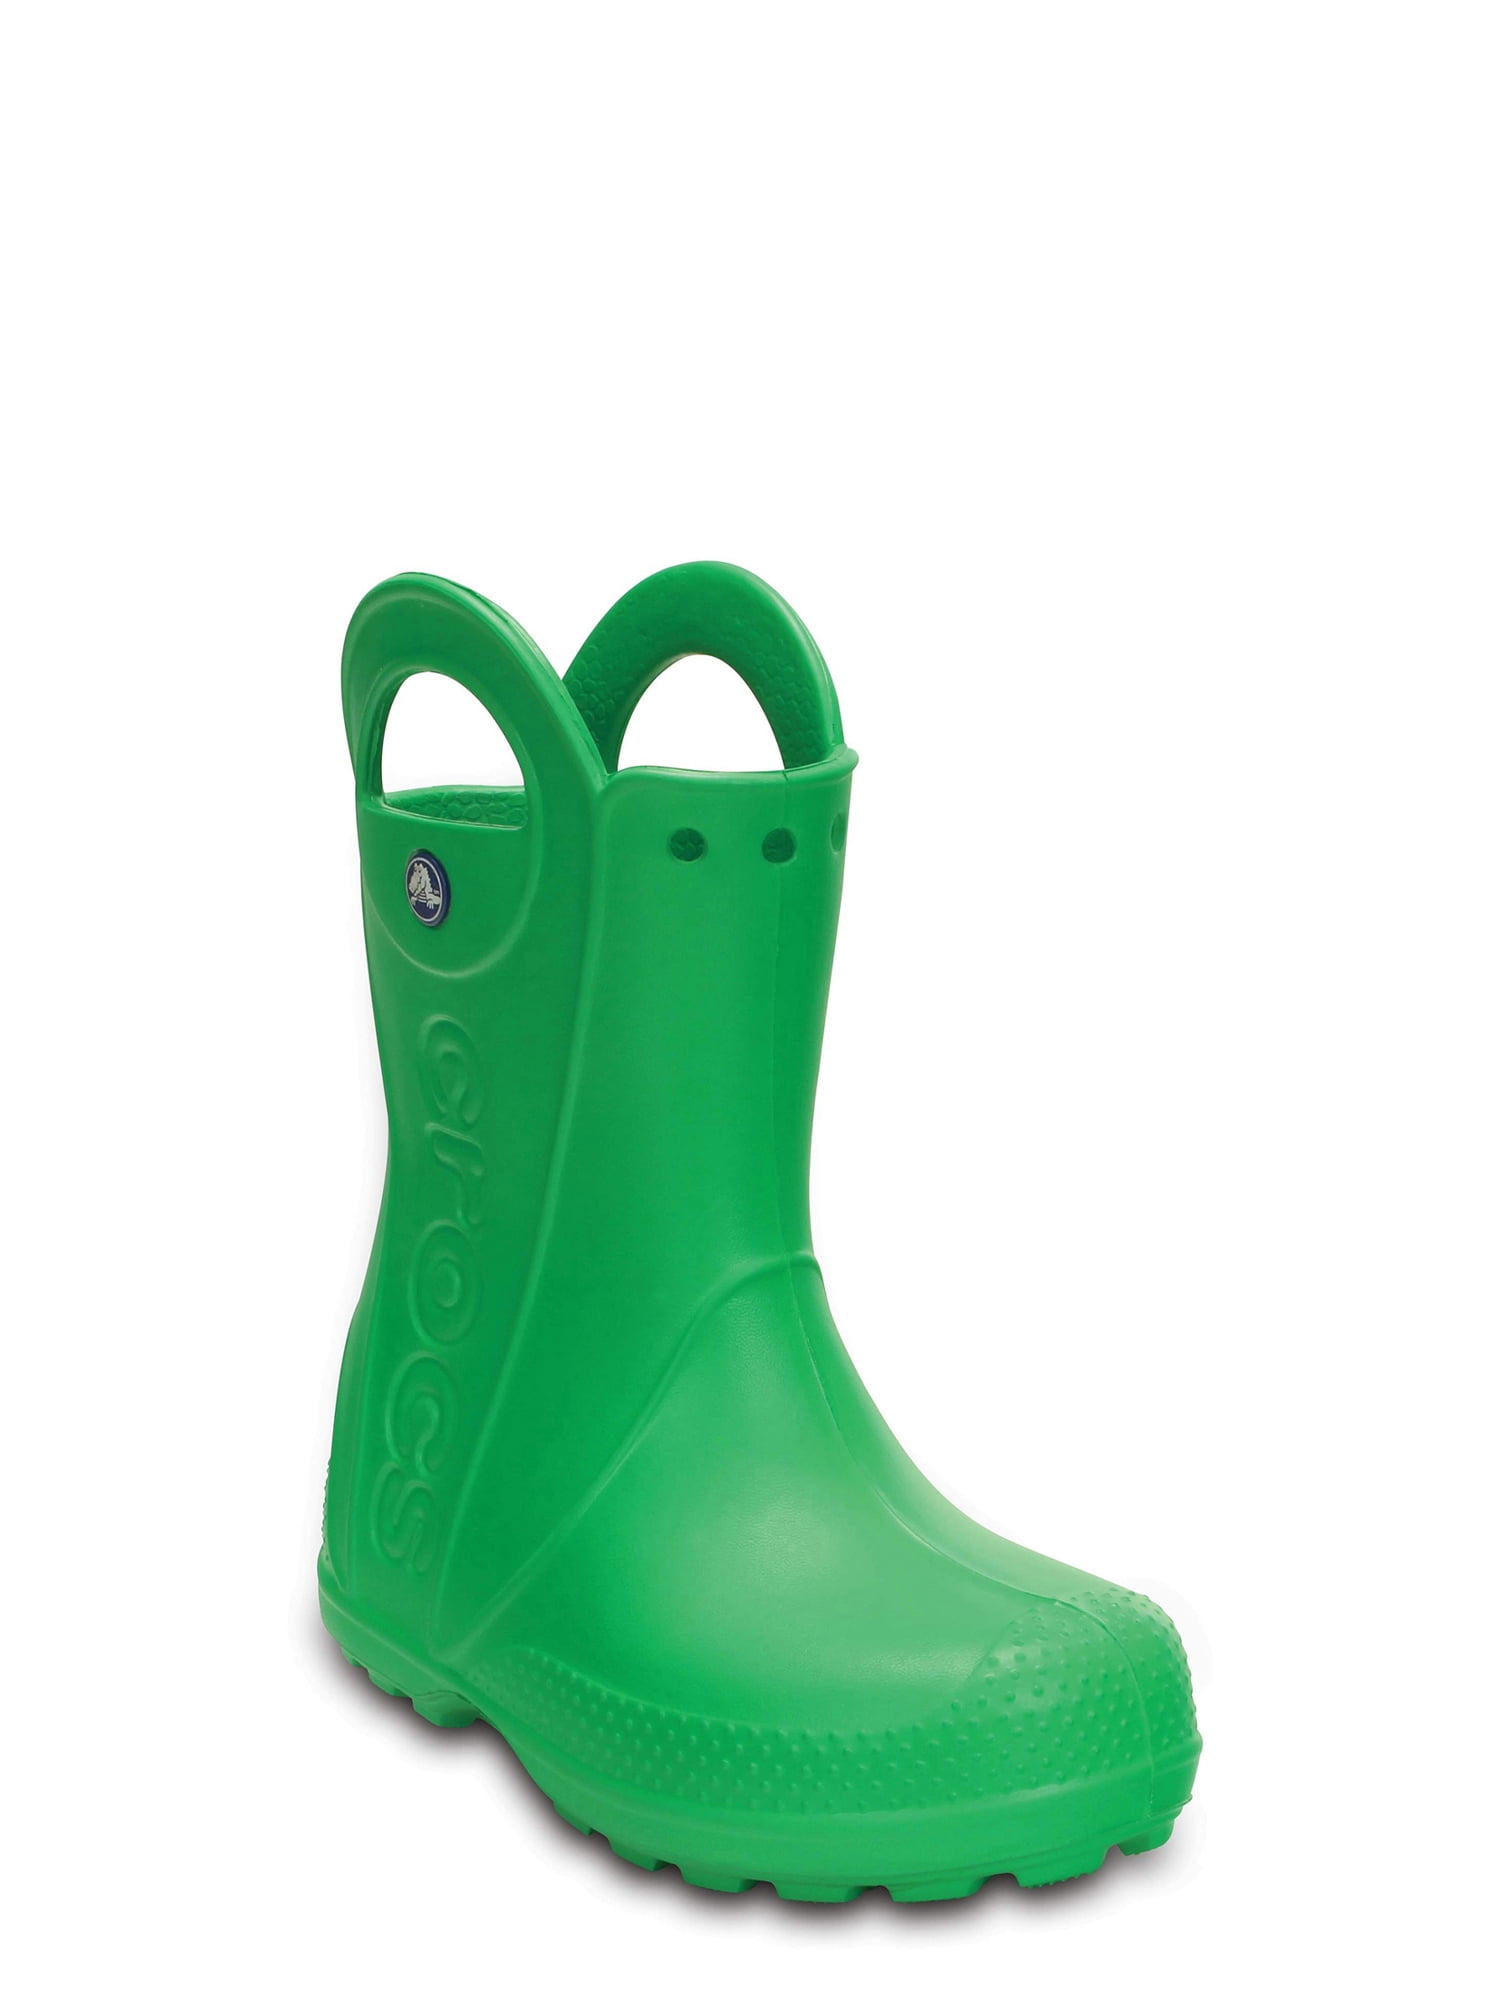 Buy > crocs boots for women > in stock